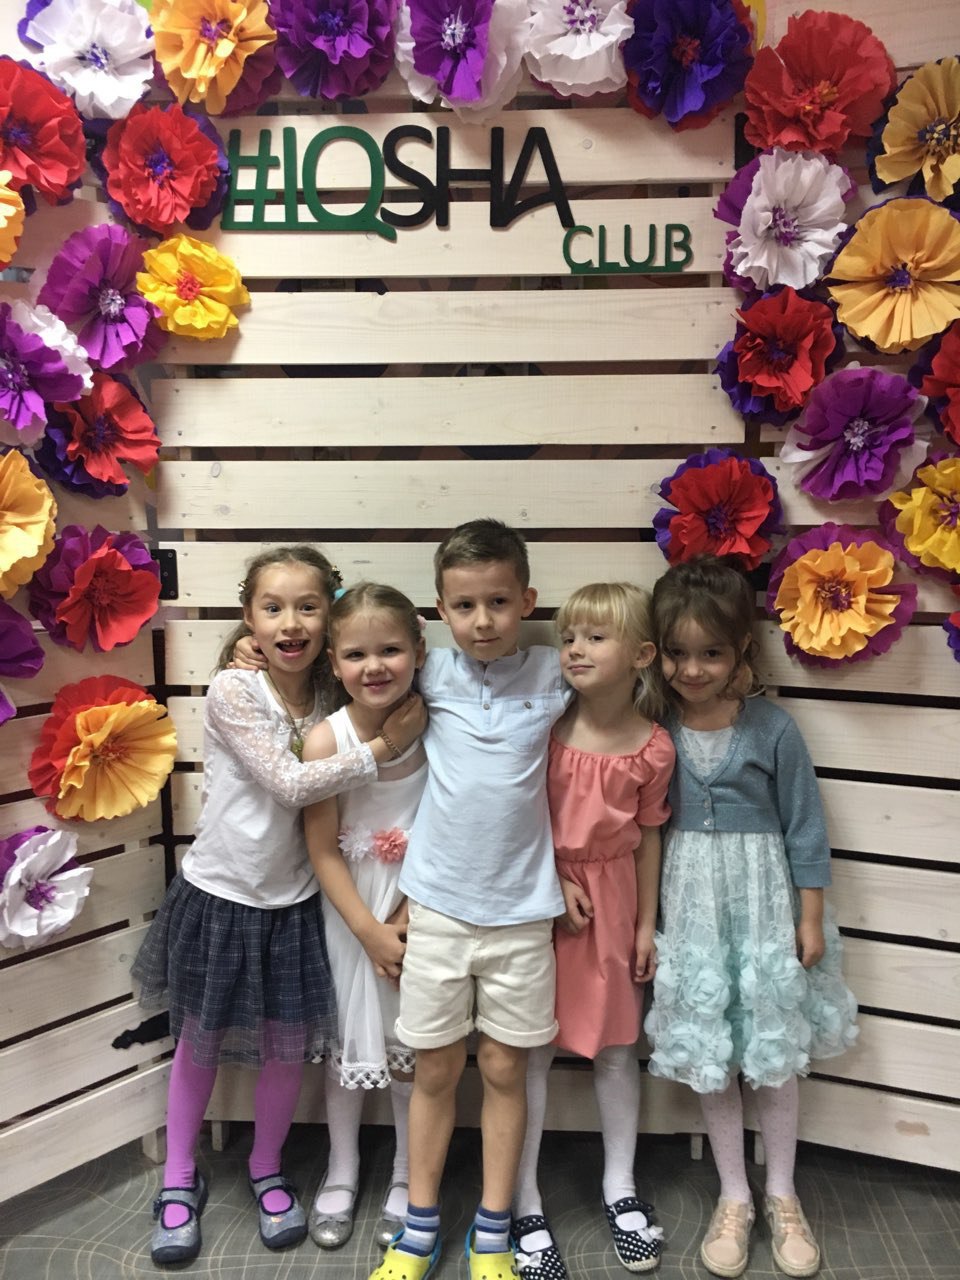 IQsha Club